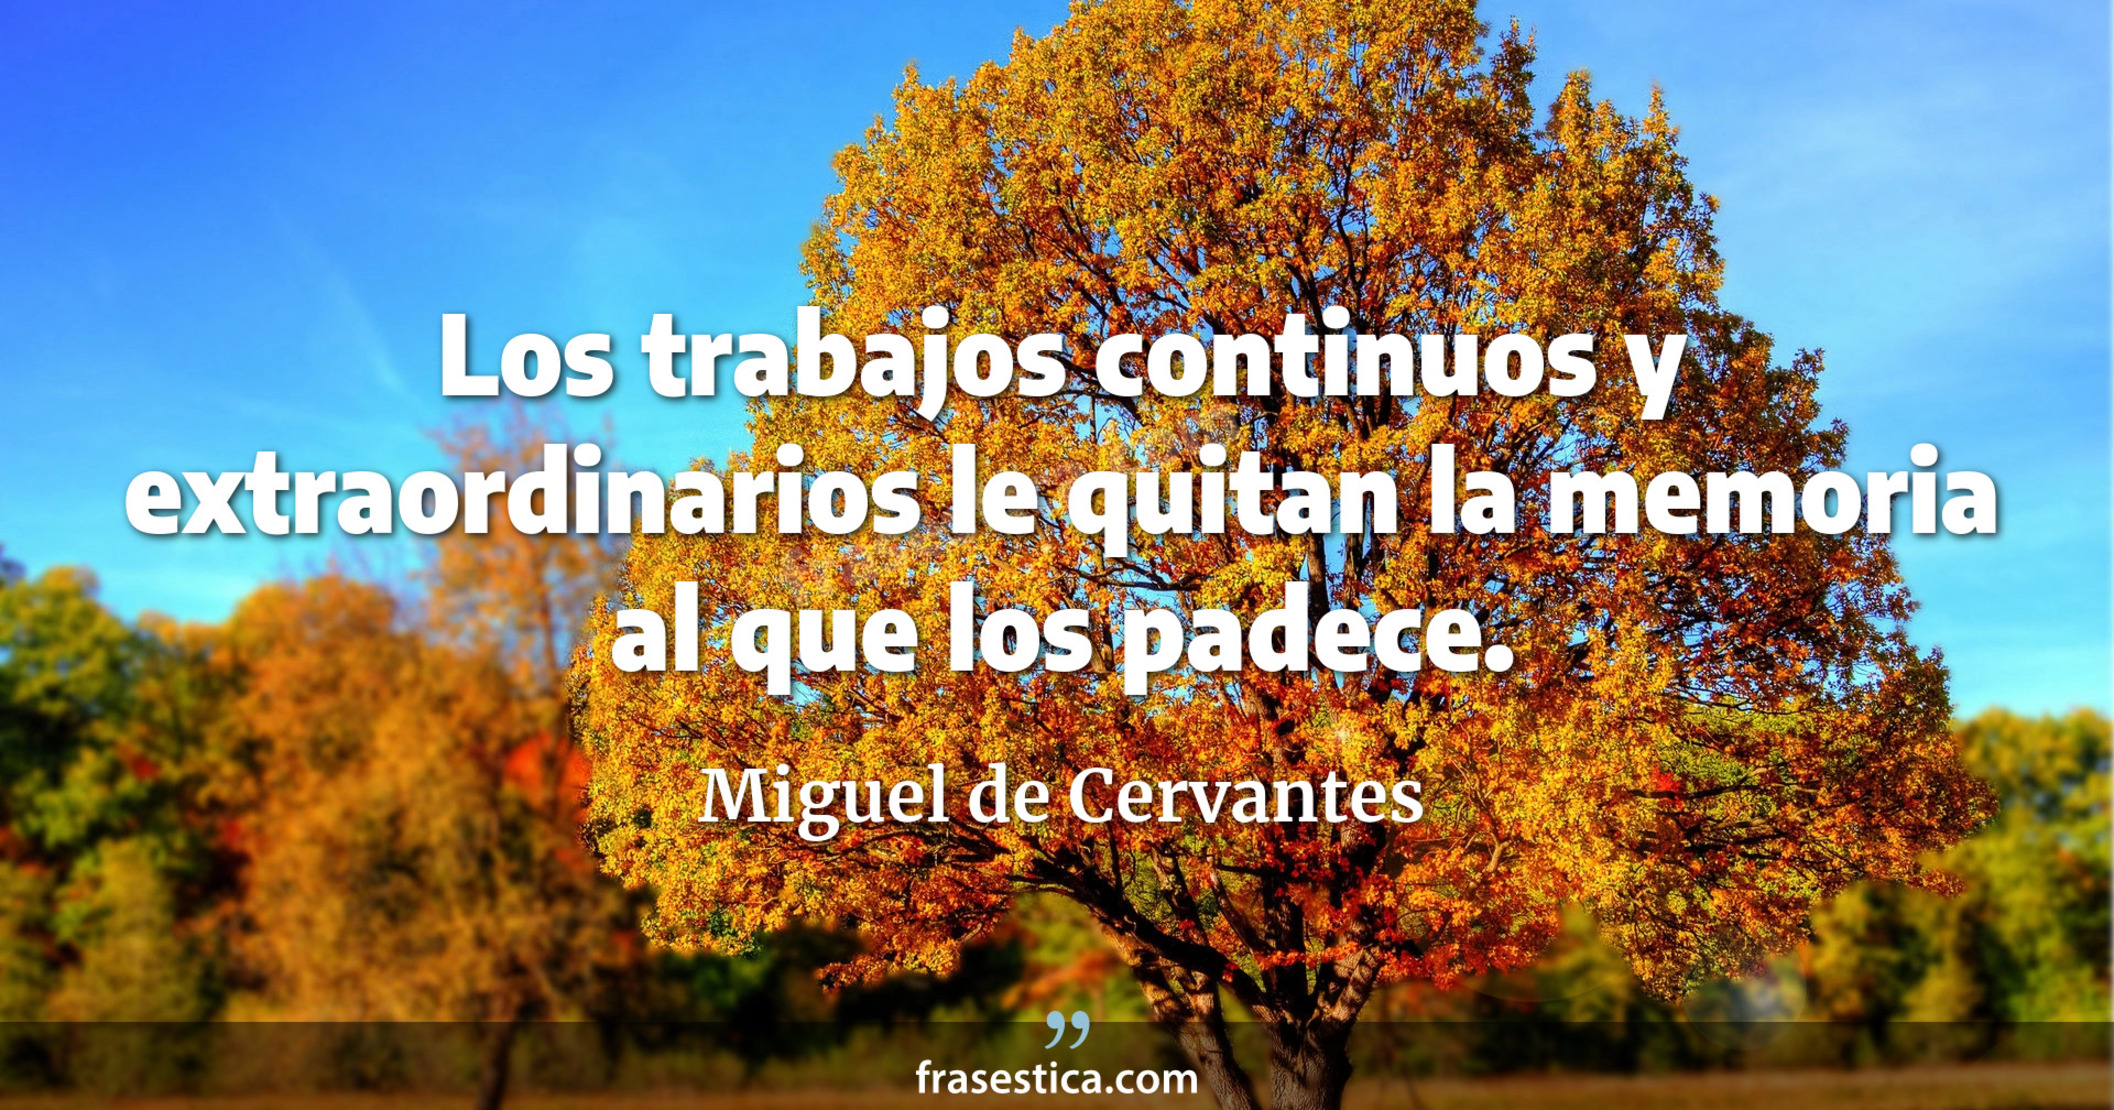 Los trabajos continuos y extraordinarios le quitan la memoria al que los padece. - Miguel de Cervantes